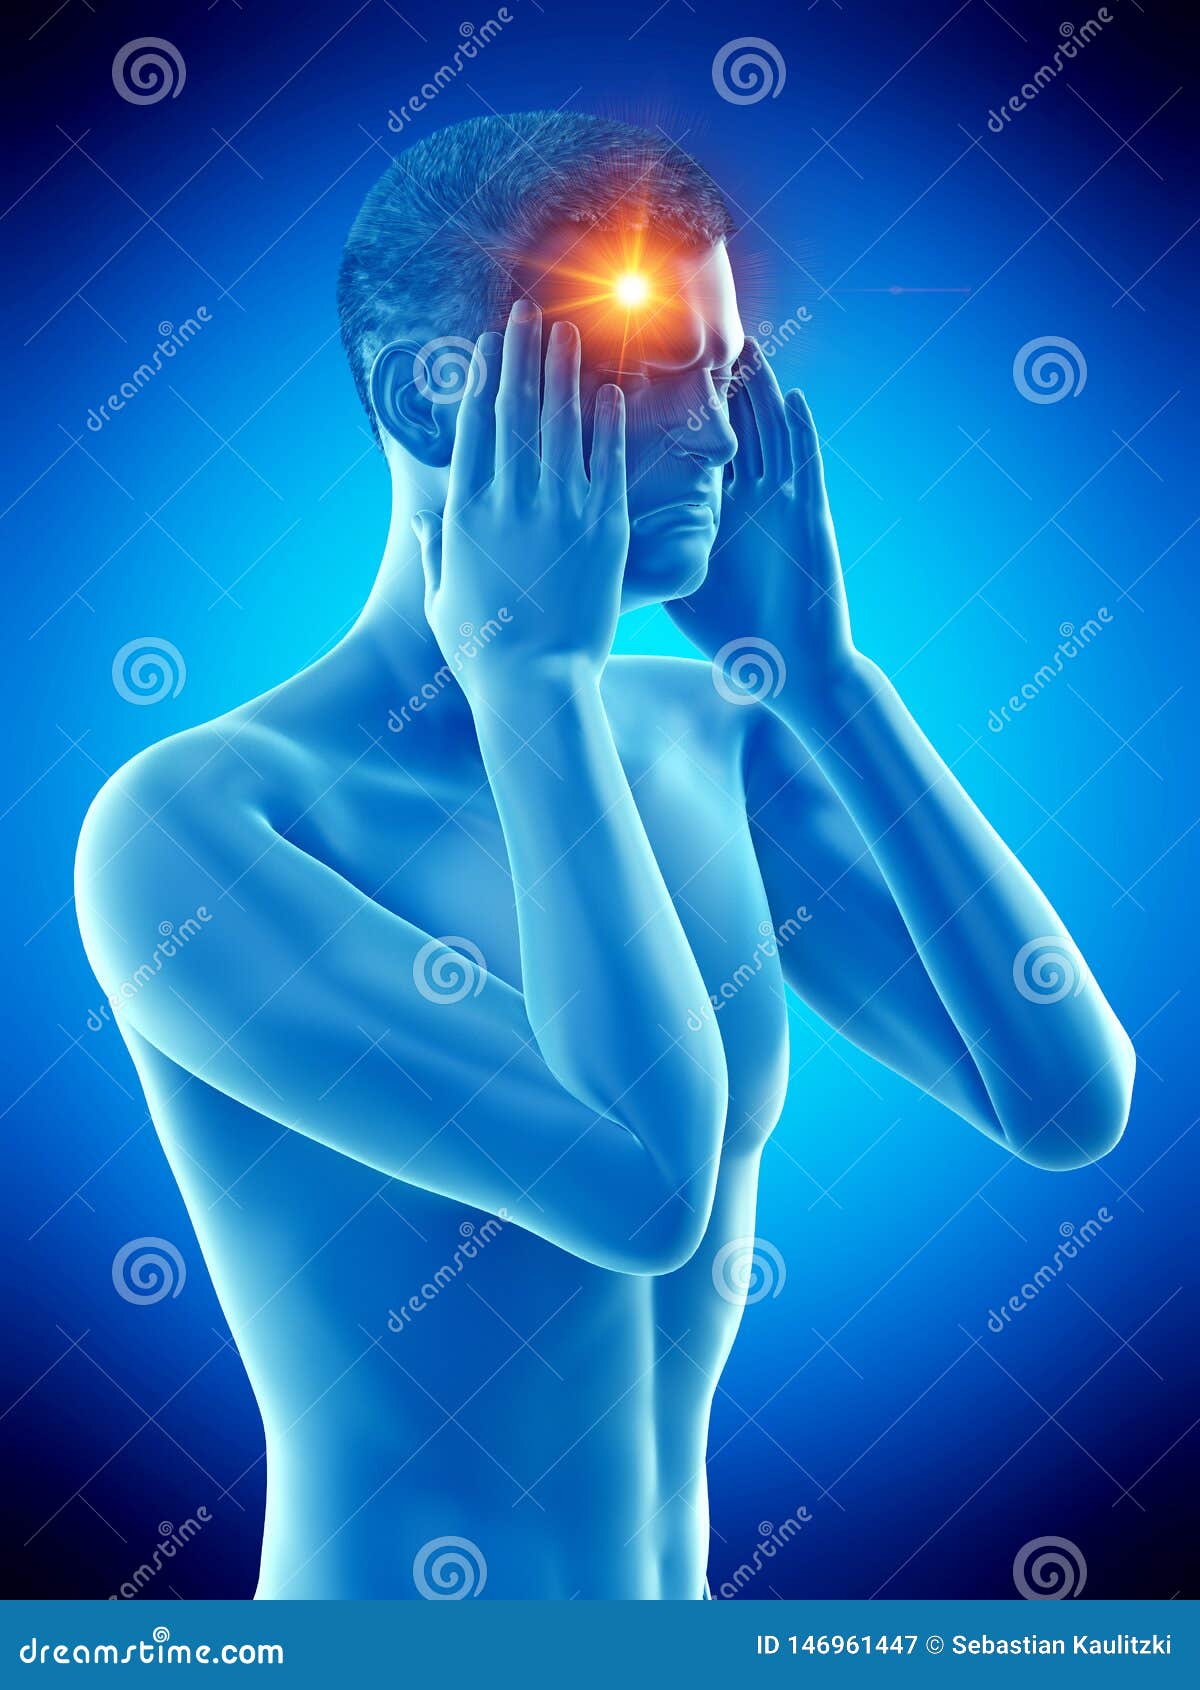 a man having a cluster headache